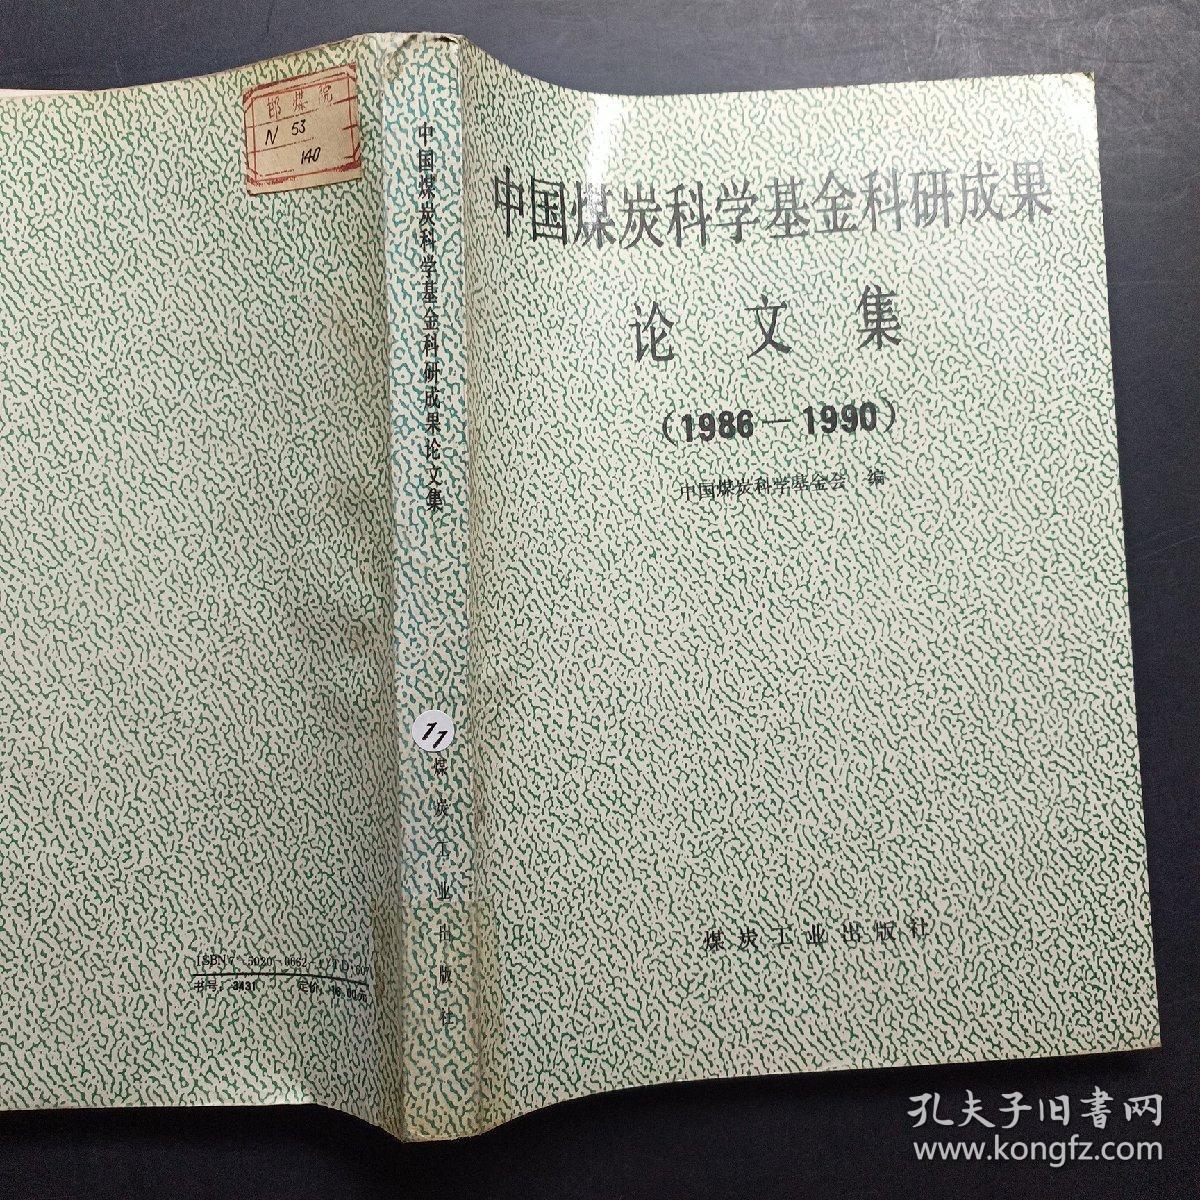 中国煤炭科学基金科研成果论文集:1986～1990